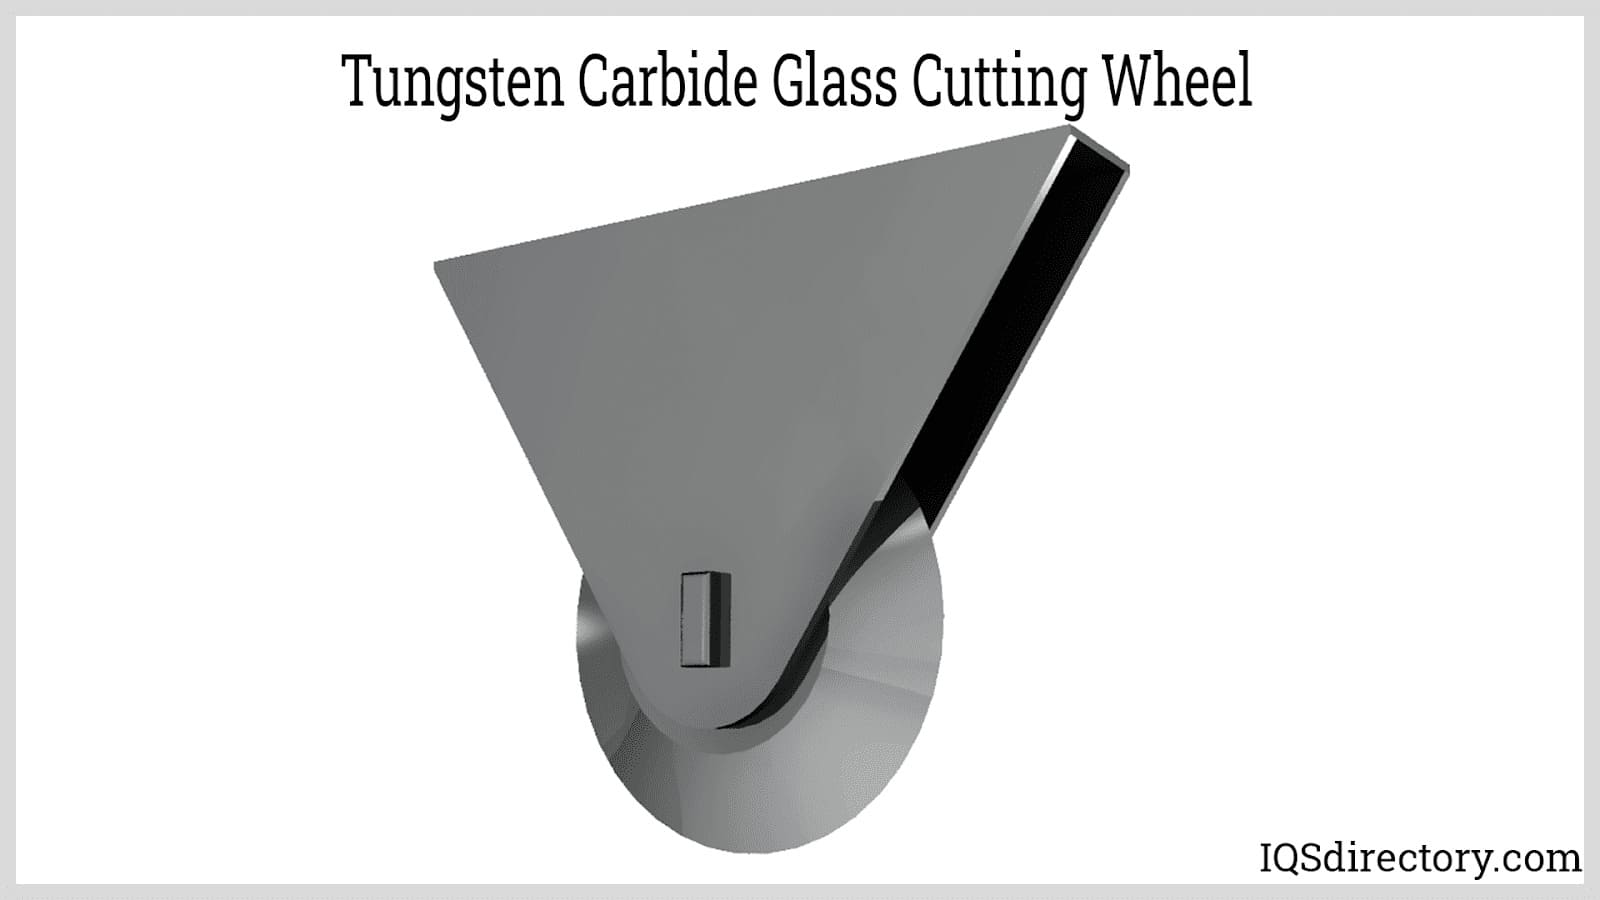 Tungsten Carbide Glass Cutting Wheel